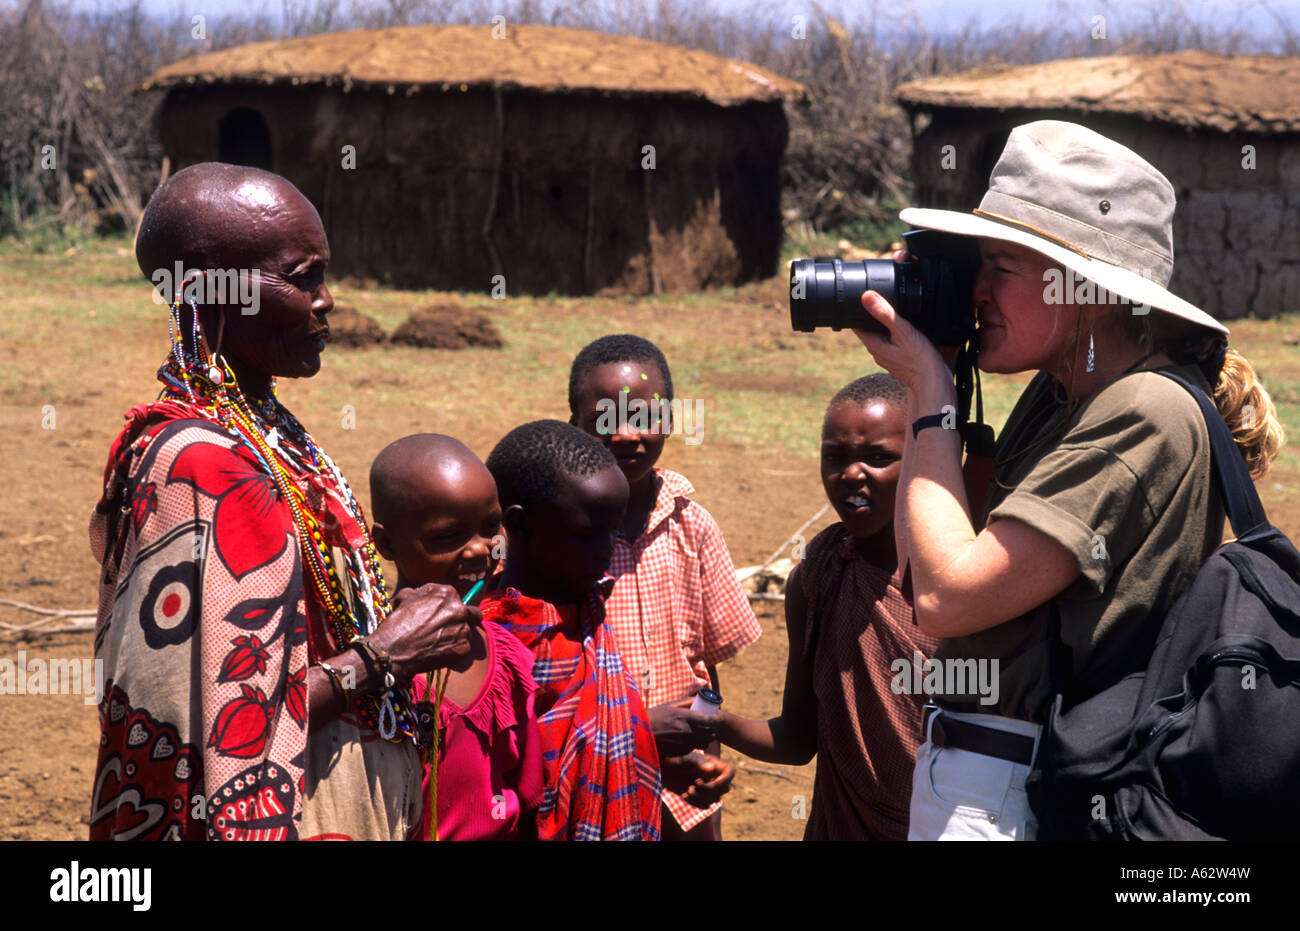 Turistica prendendo fotografie della tribù Masai gente in costume abito tradizionale nel villaggio vicino Kenya Africa Foto Stock